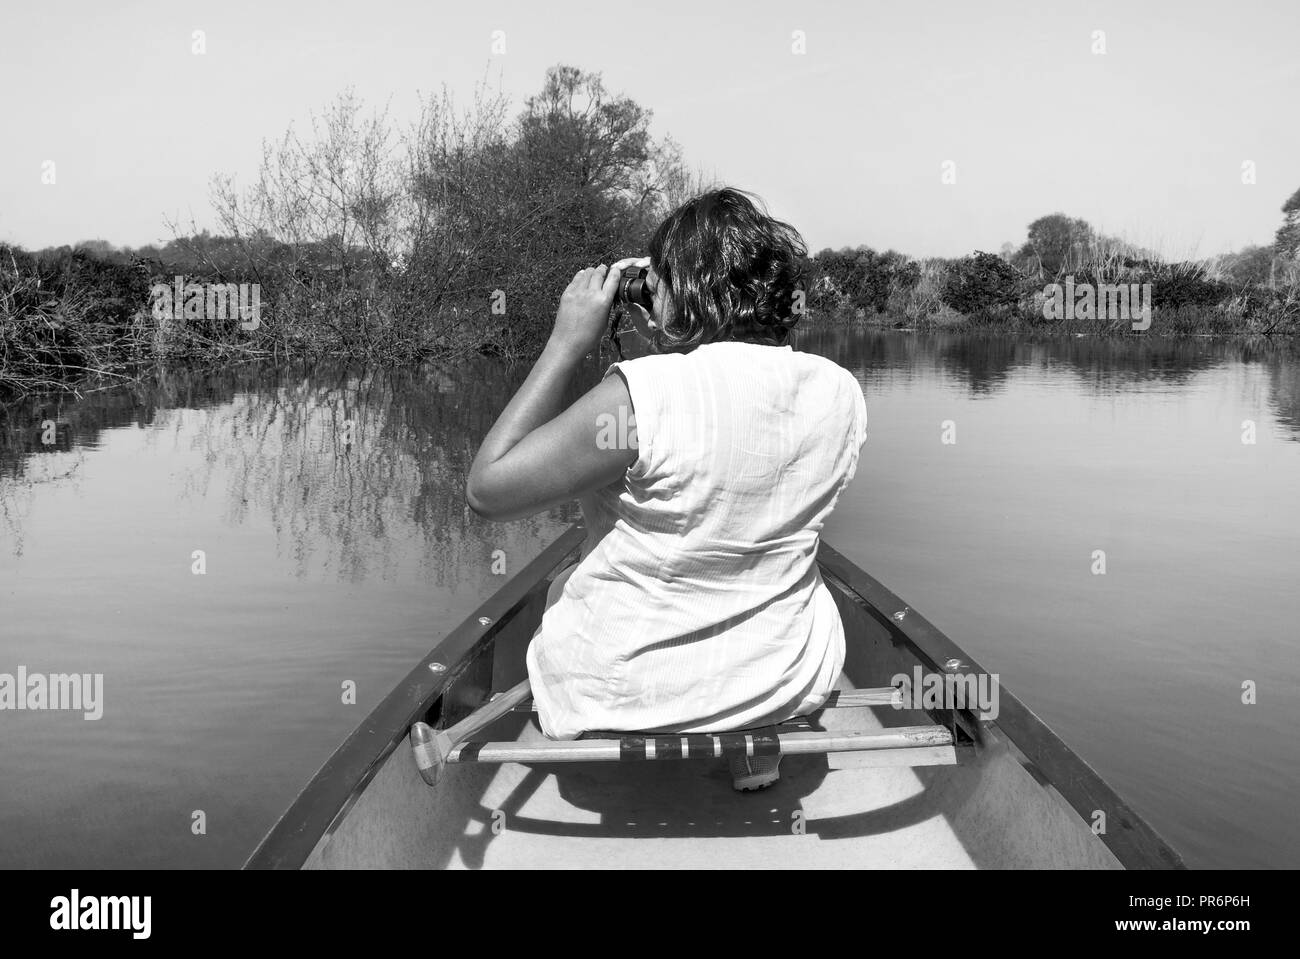 53 Jahre alte asiatische Frau an der Vorderseite eines Kanu seitlich auf der Suche drehen durch ein Fernglas für wilde Leben sitzen, das Kanu ist auf einem blauen Ri Stockfoto